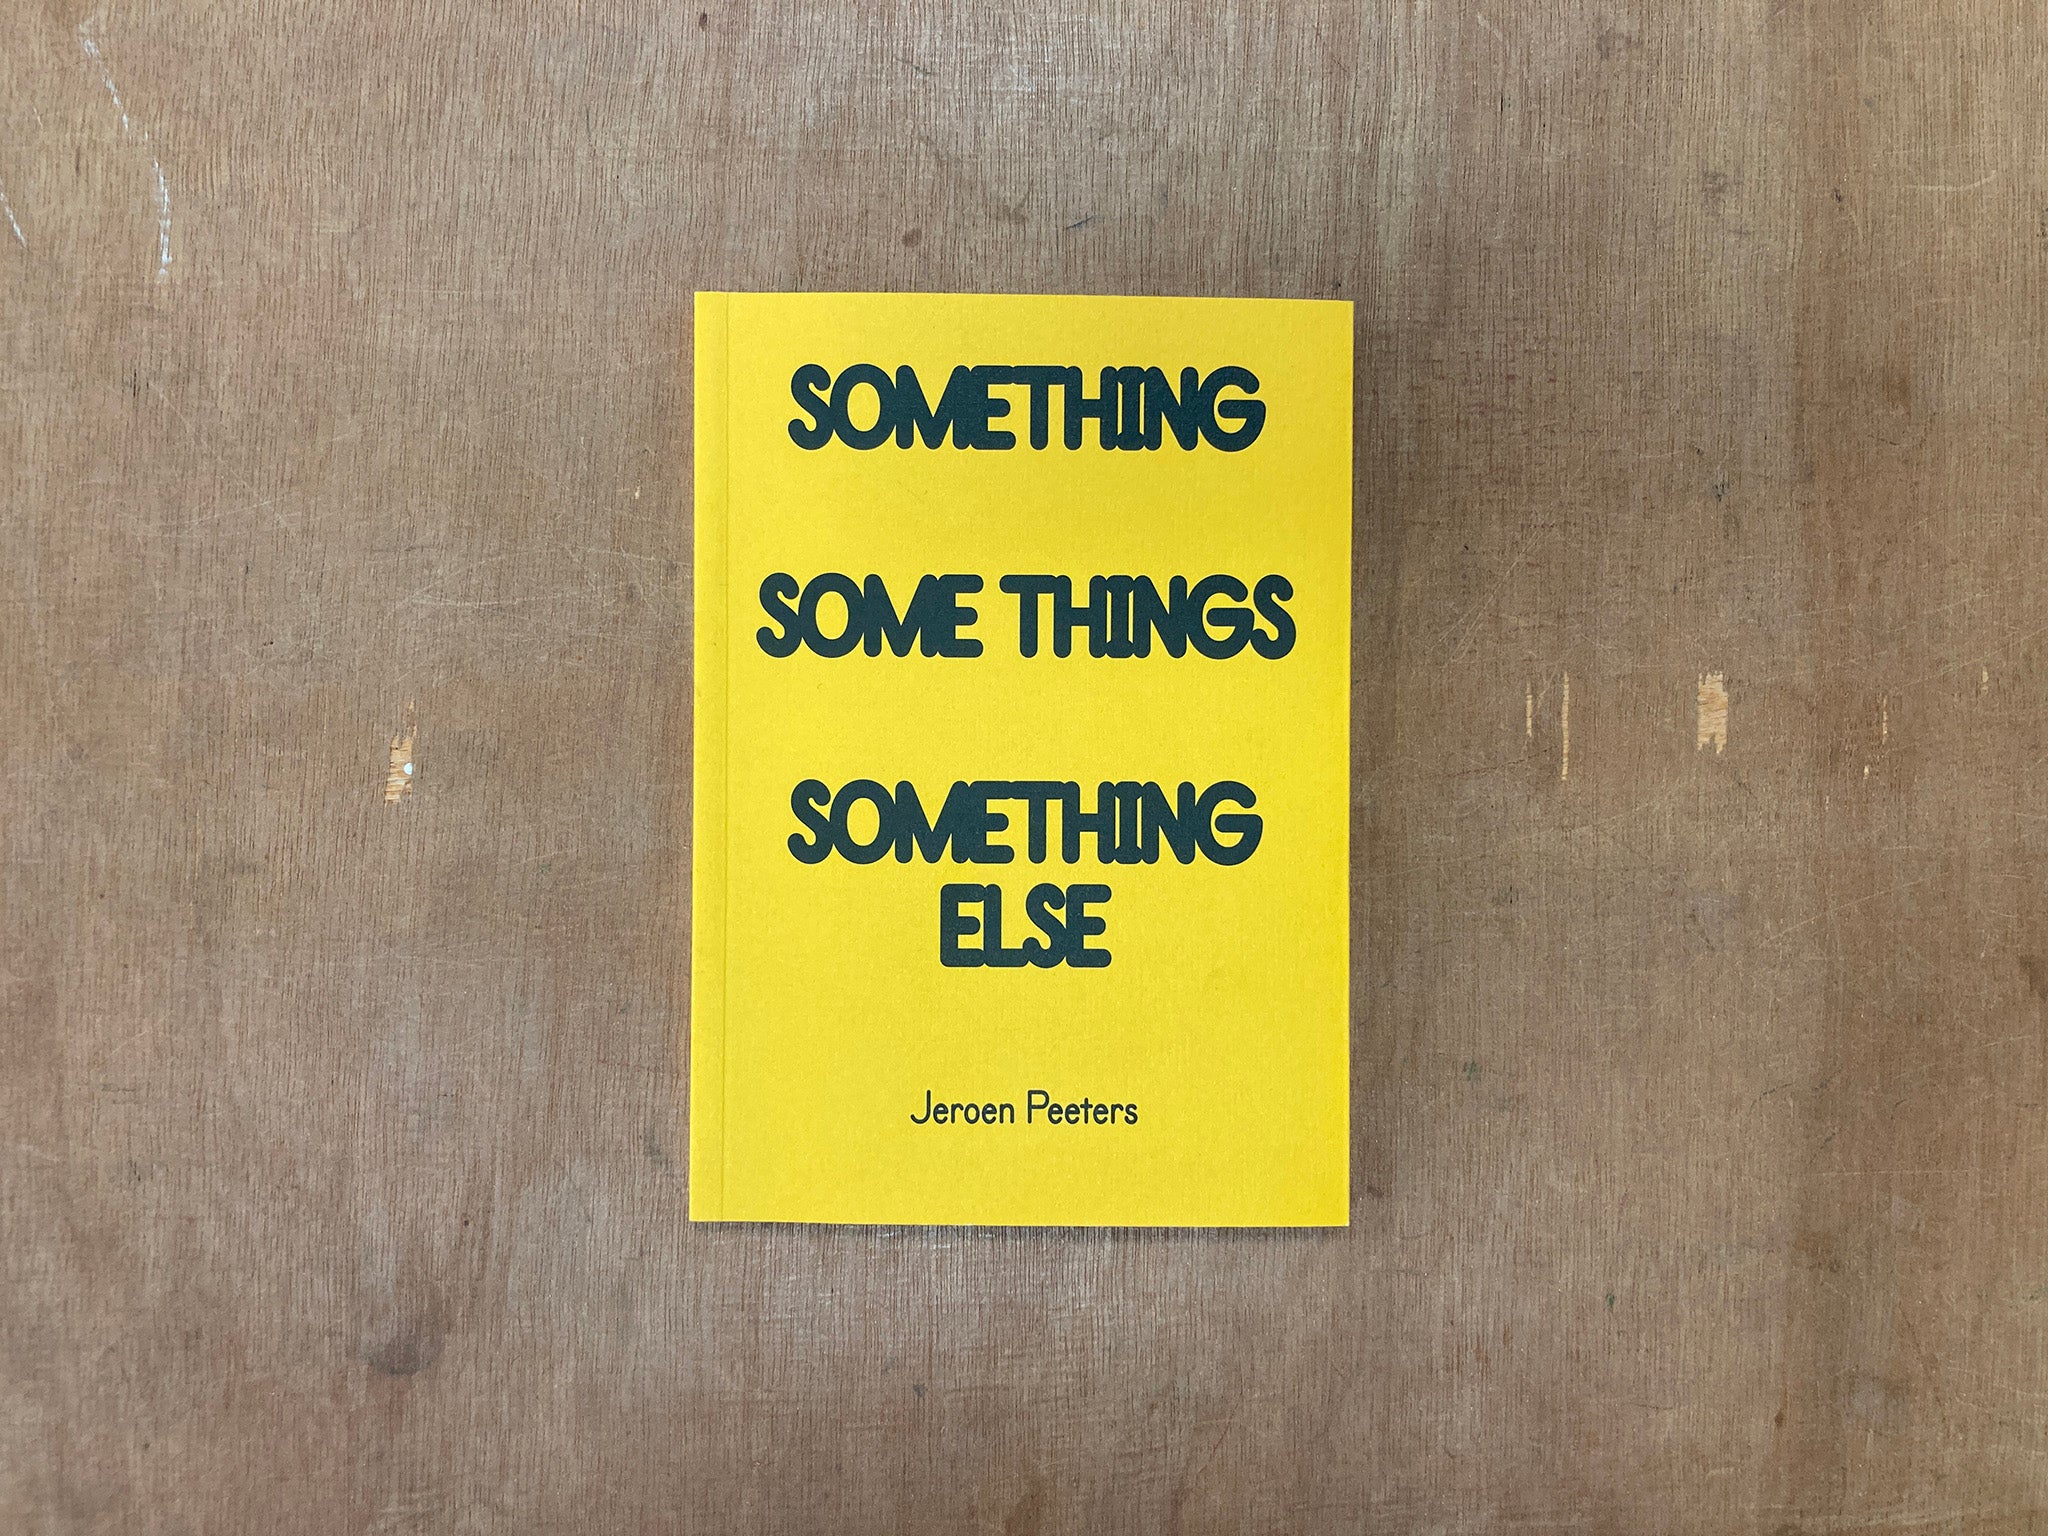 SOMETHING SOME THINGS SOMETHING ELSE by Jeroen Peeters